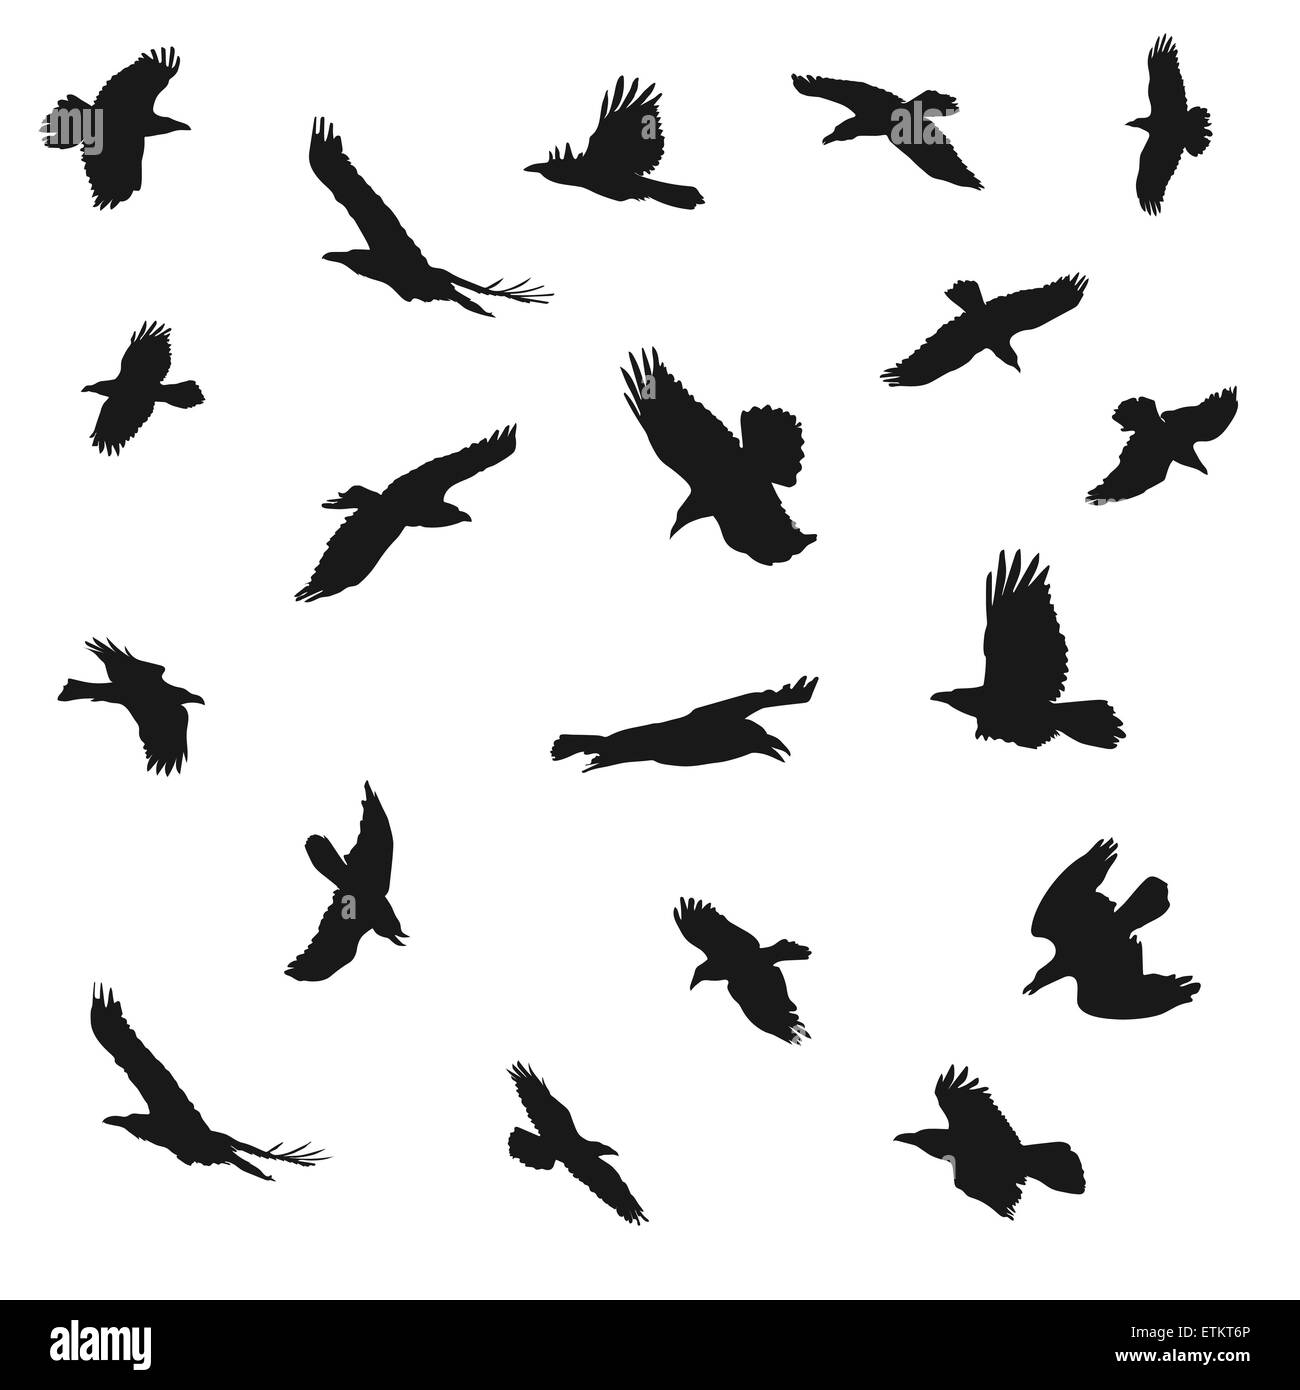 Illustrazione Vettoriale di aquile sagome volanti. Concetti di eleganza, la forza e la libertà. Illustrazione Vettoriale